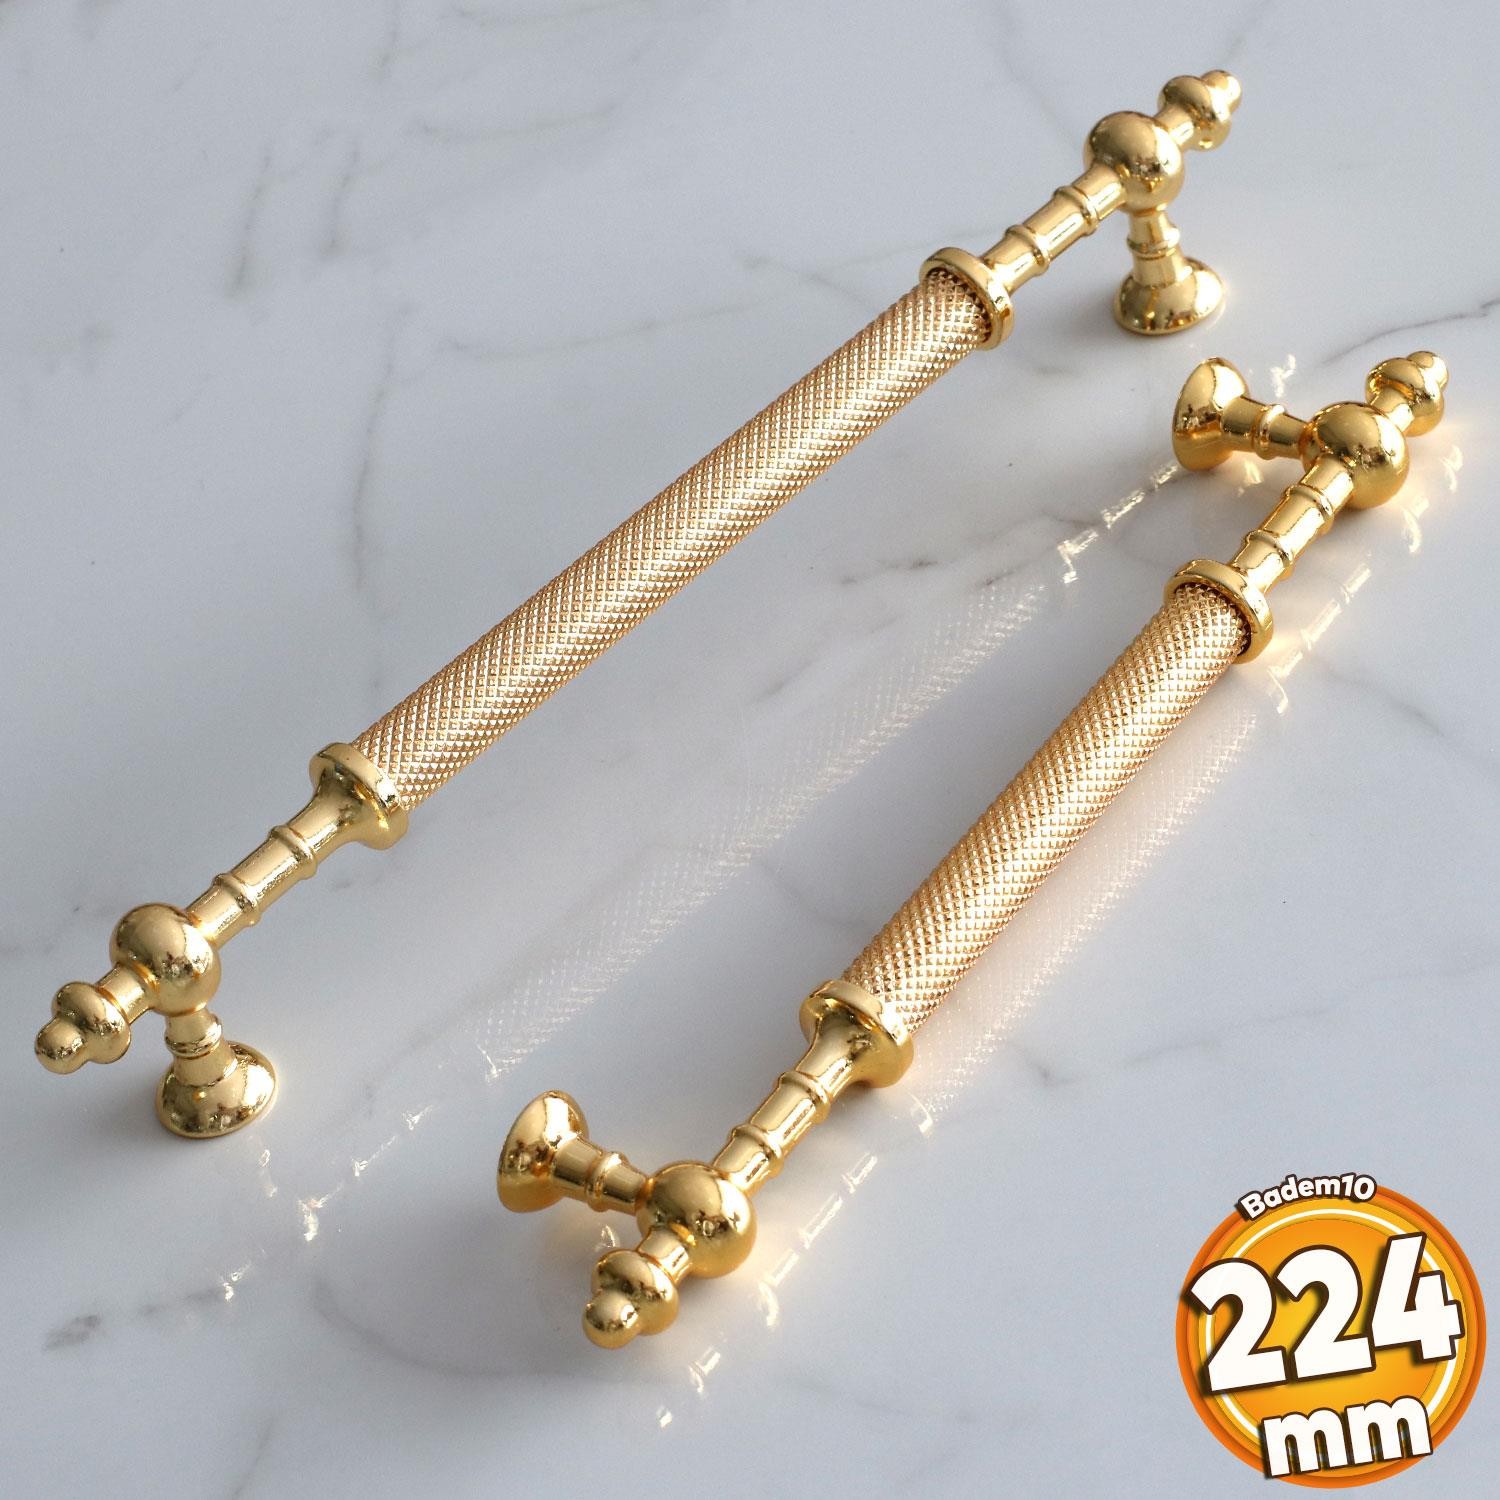 Ladin Altın Gold Metal Kulp 224 mm-22.4 cm Mobilya Çekmece Mutfak Dolabı Dolap Kapak Kulpları Kulbu